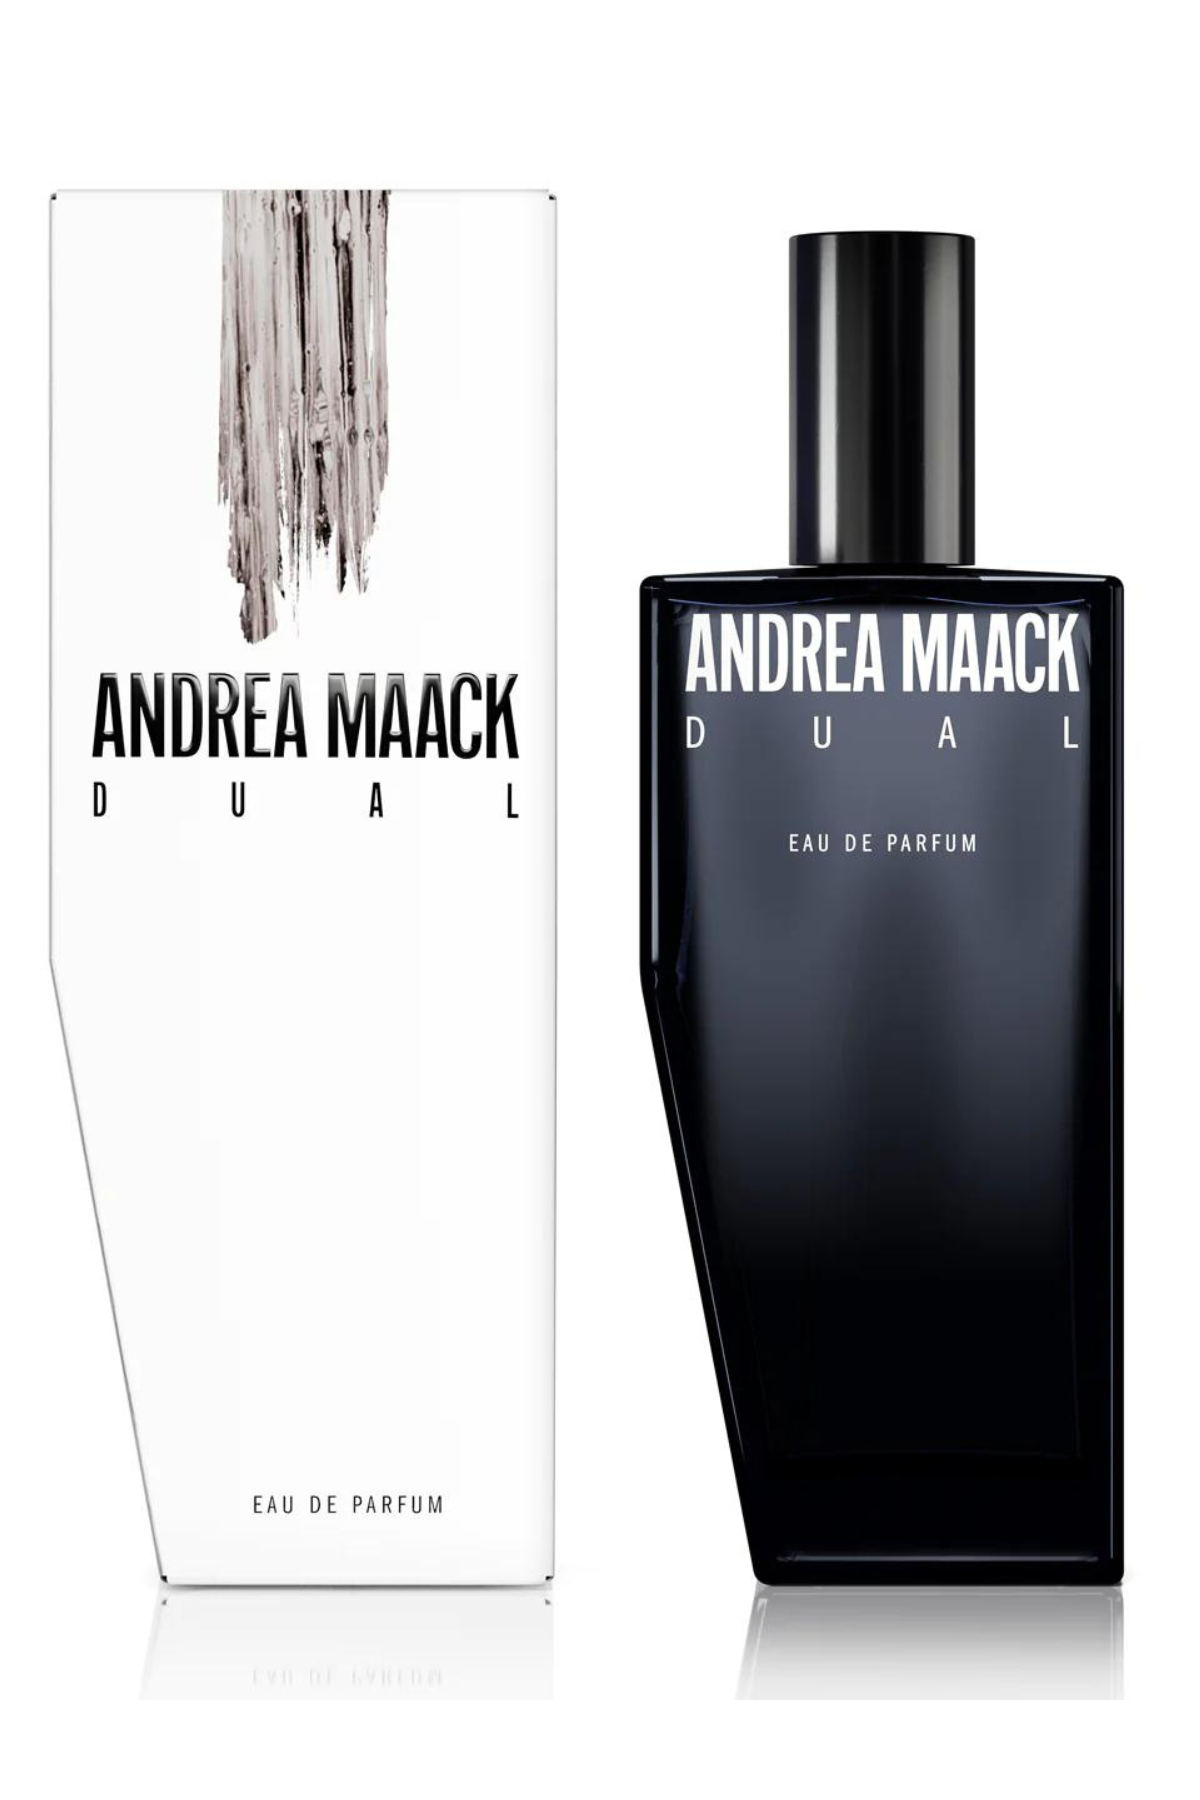 Andrea Maack perfume